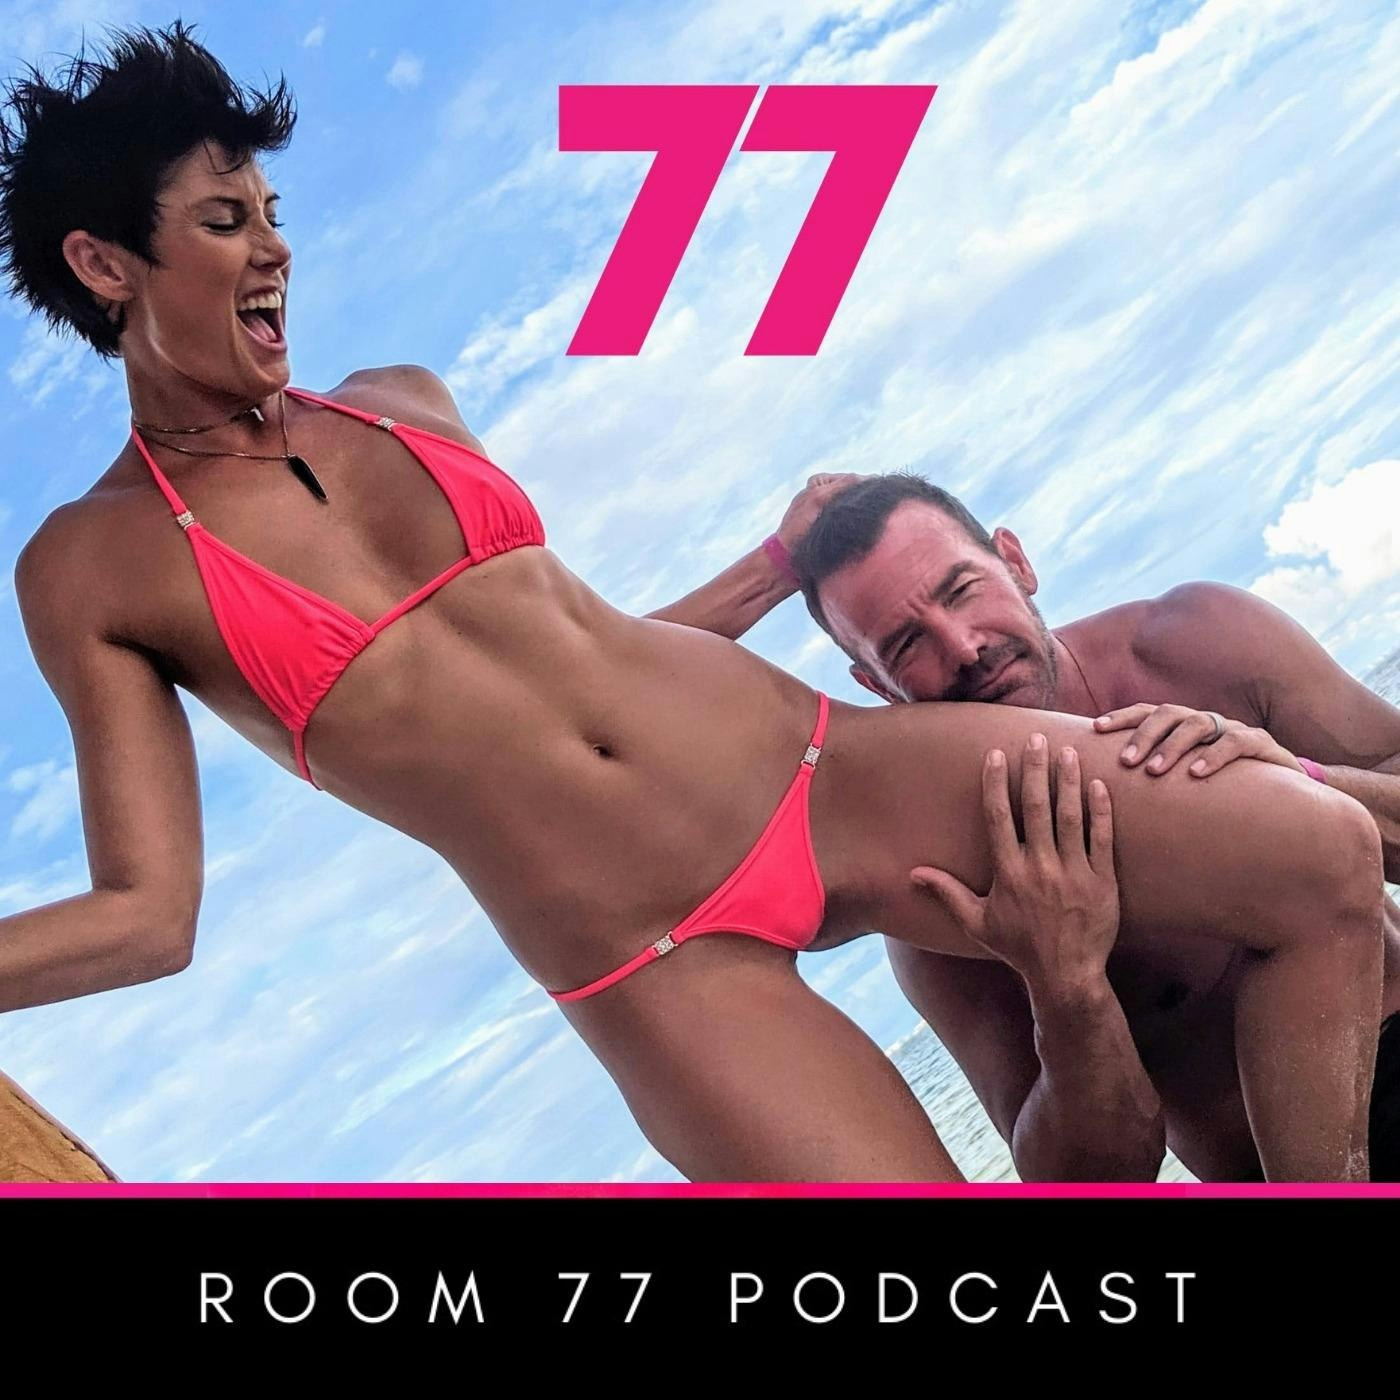 Room 77 Swinger Podcast Lifestyle Podcast For Swingers Listen here Podplay photo